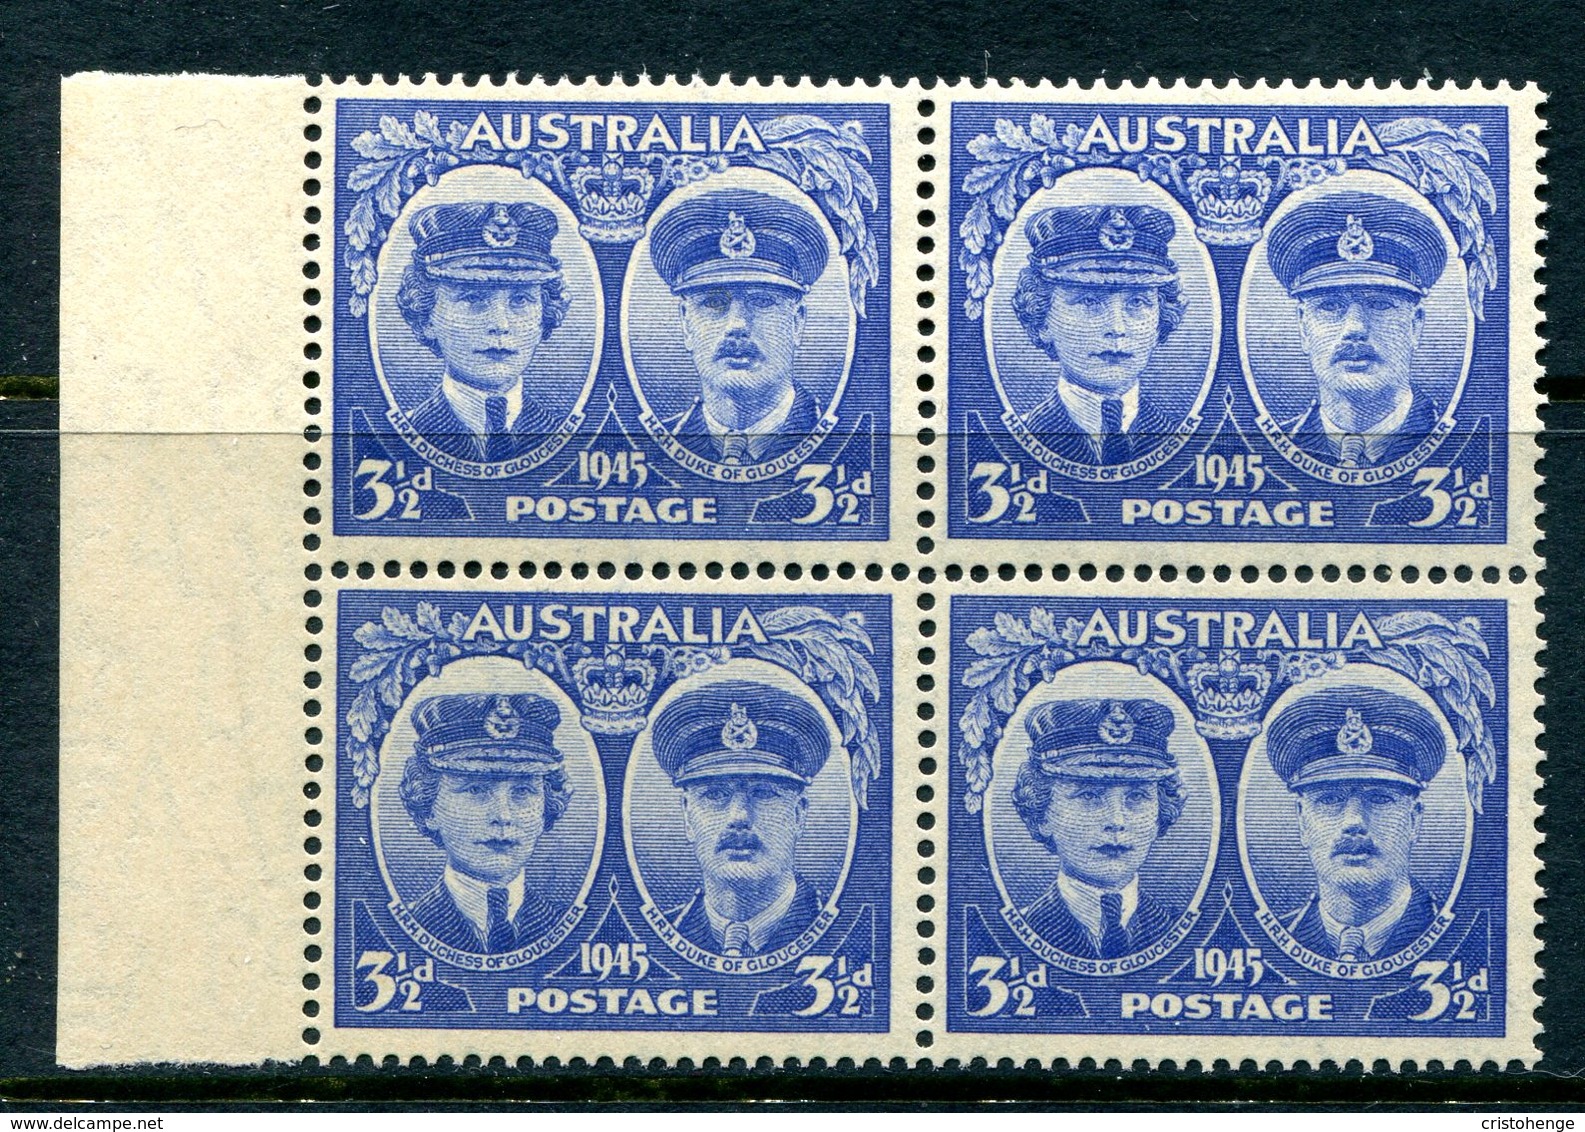 Australia 1945 Arrival Of Duke & Duchess Of Gloucester -3½d Ultramarine Block Of 4 HM (SG 210) - Mint Stamps